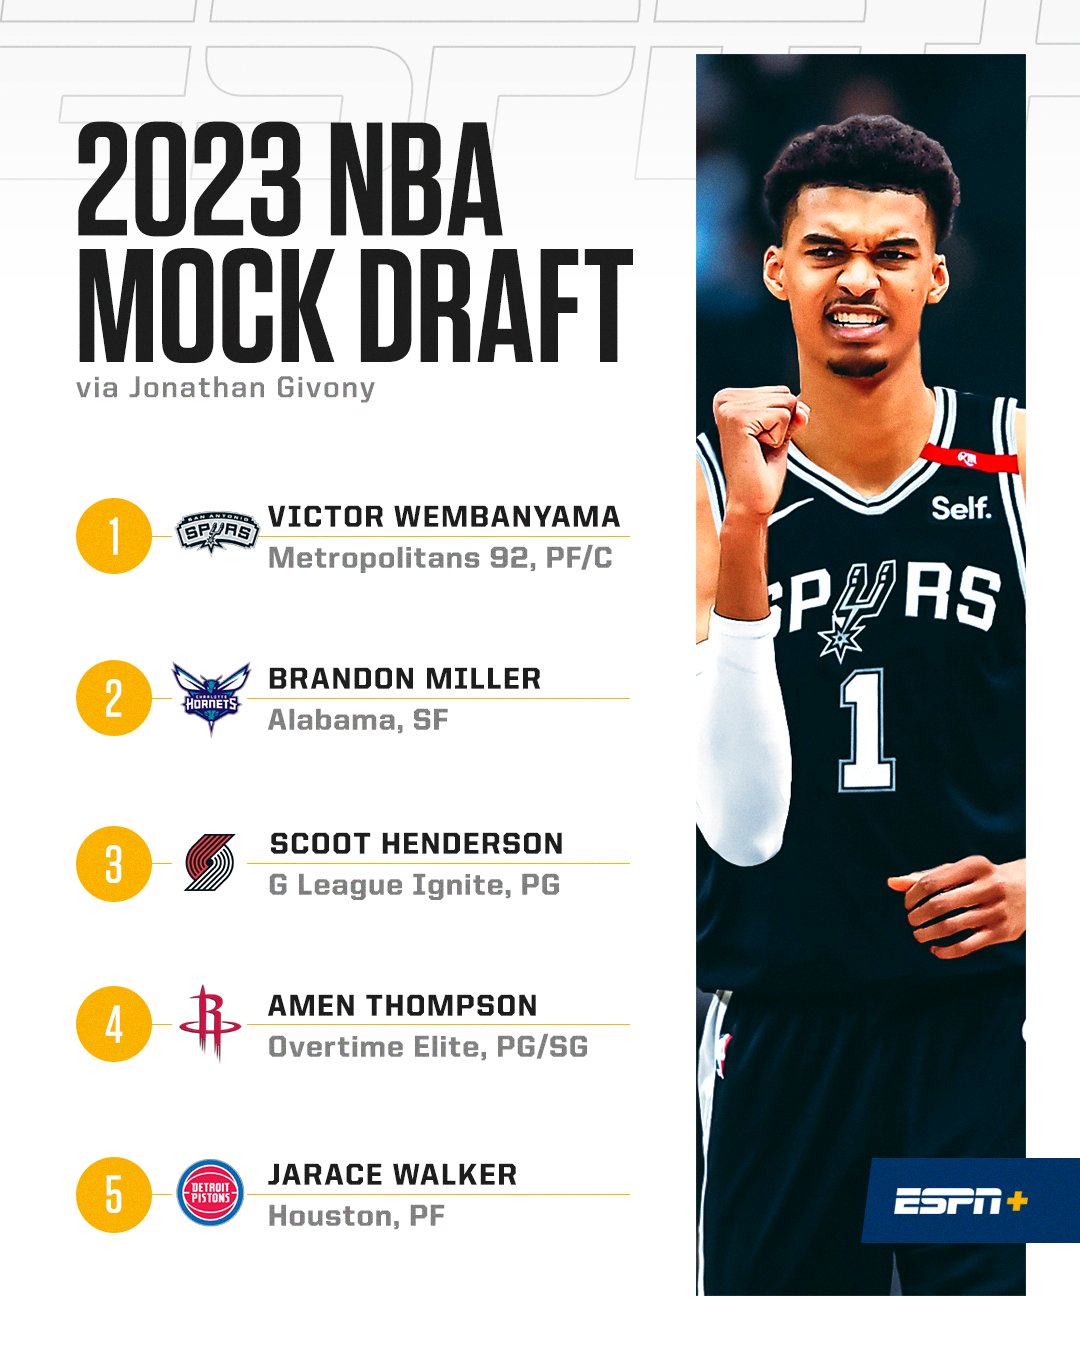 The Ringer's 2023 NBA Mock Draft